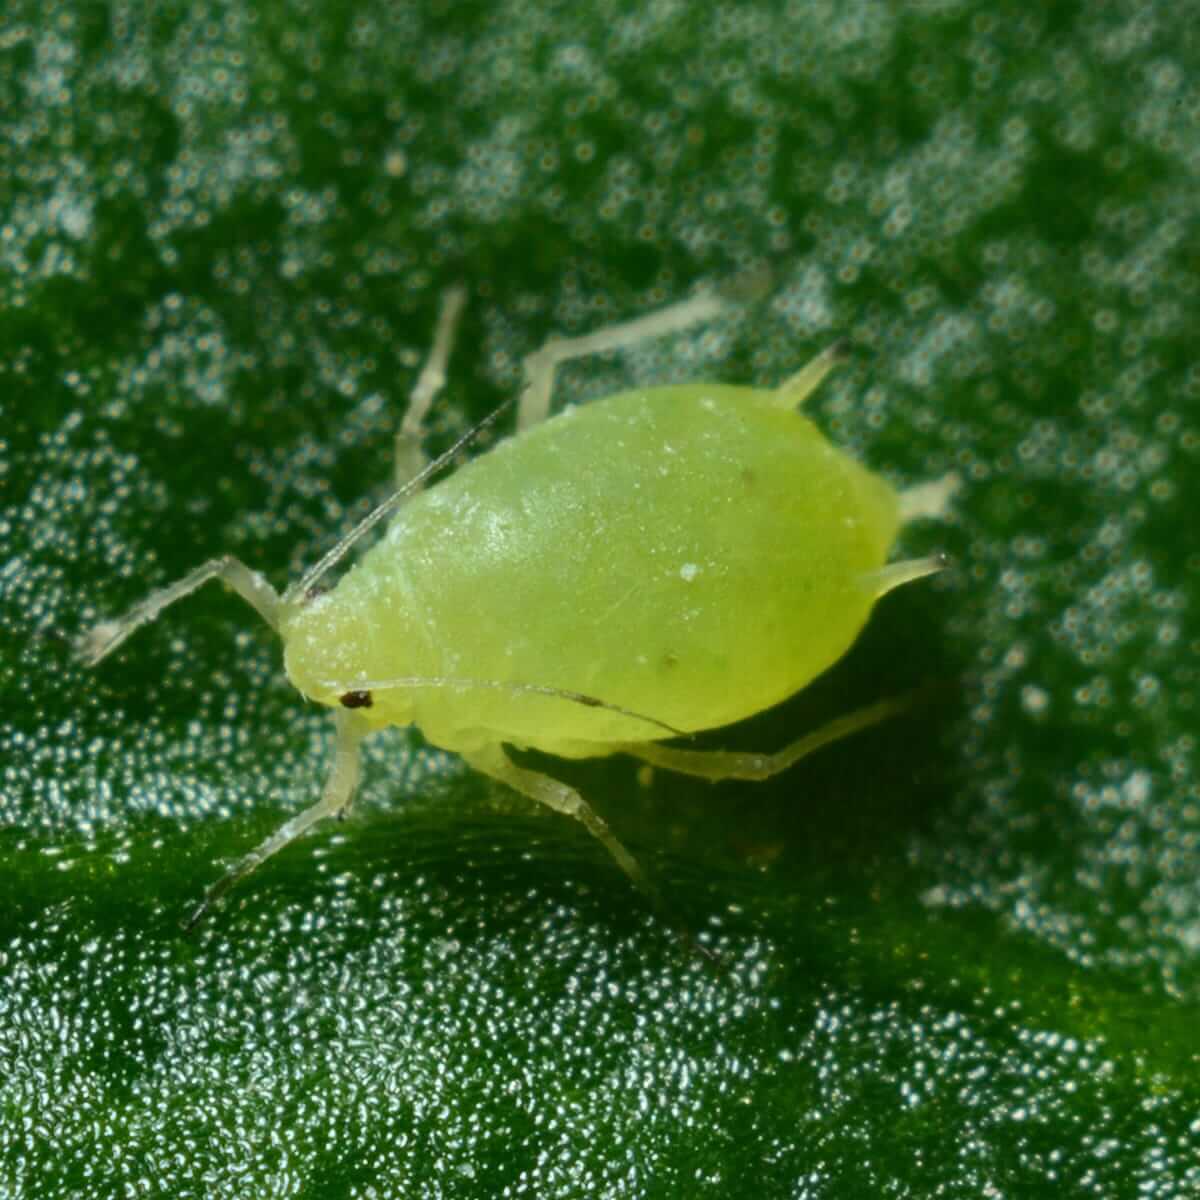 aphids-large-on-leaf-iStock-1189138446.jpg